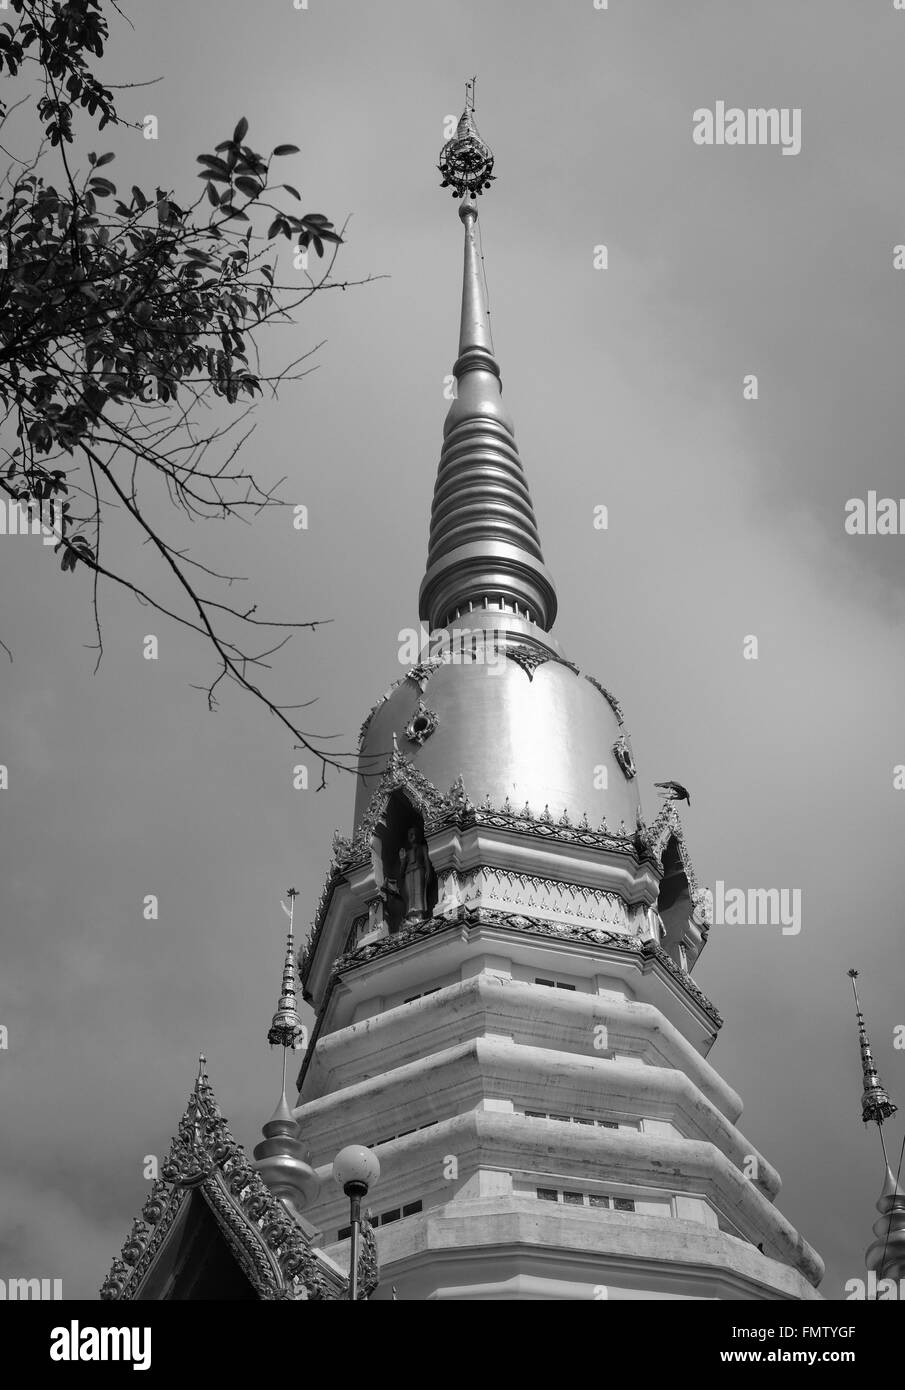 Templo budista en Tailandia locales del sudeste asiático Foto de stock